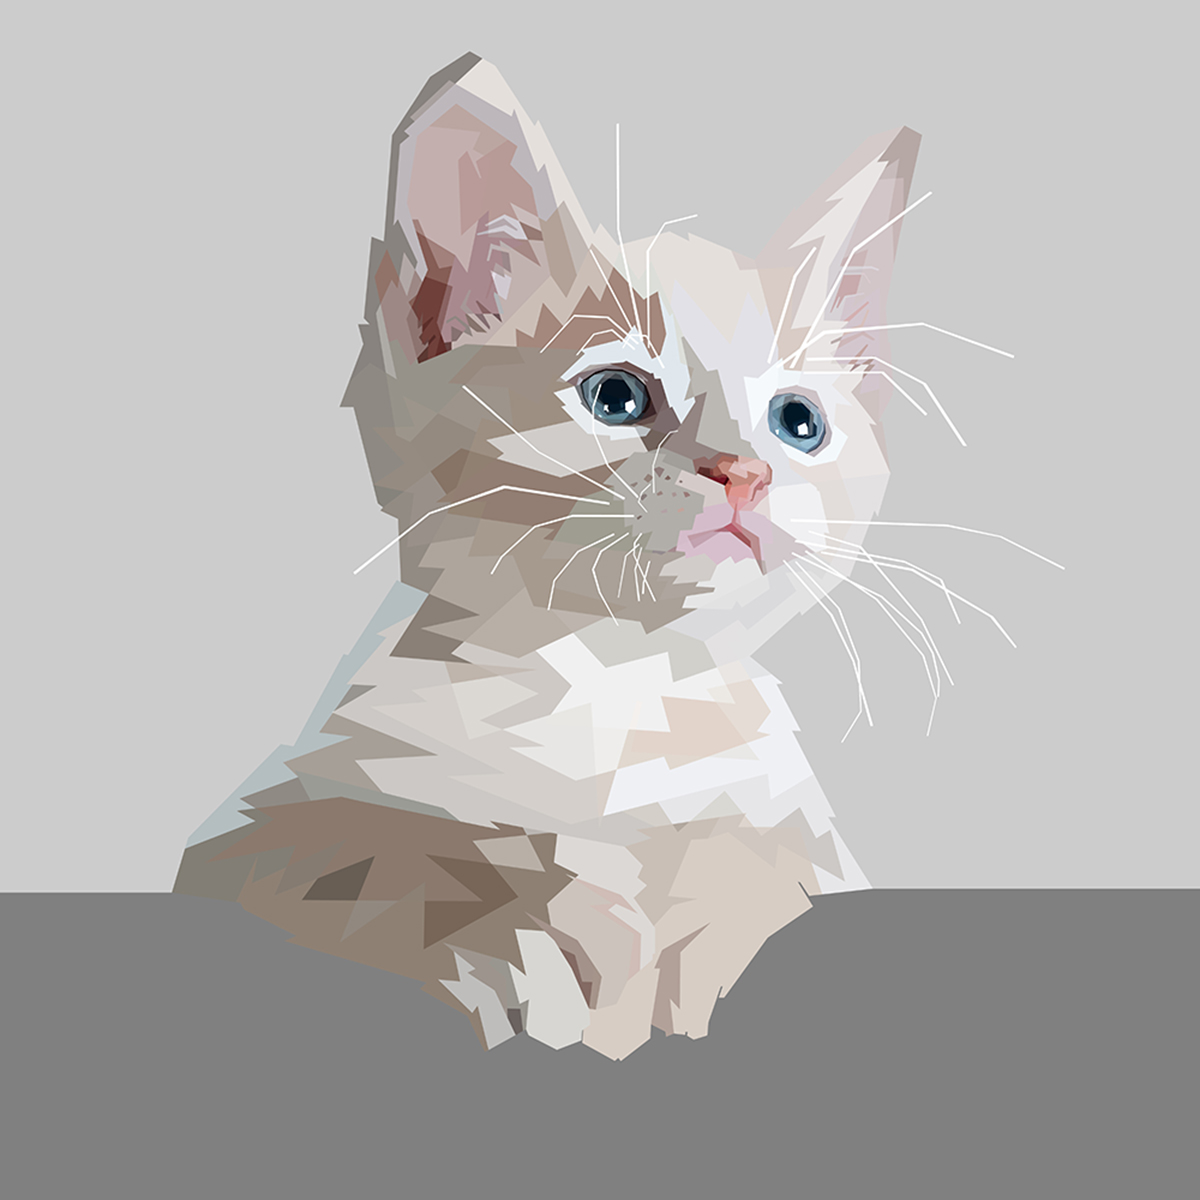 Pintura de gato